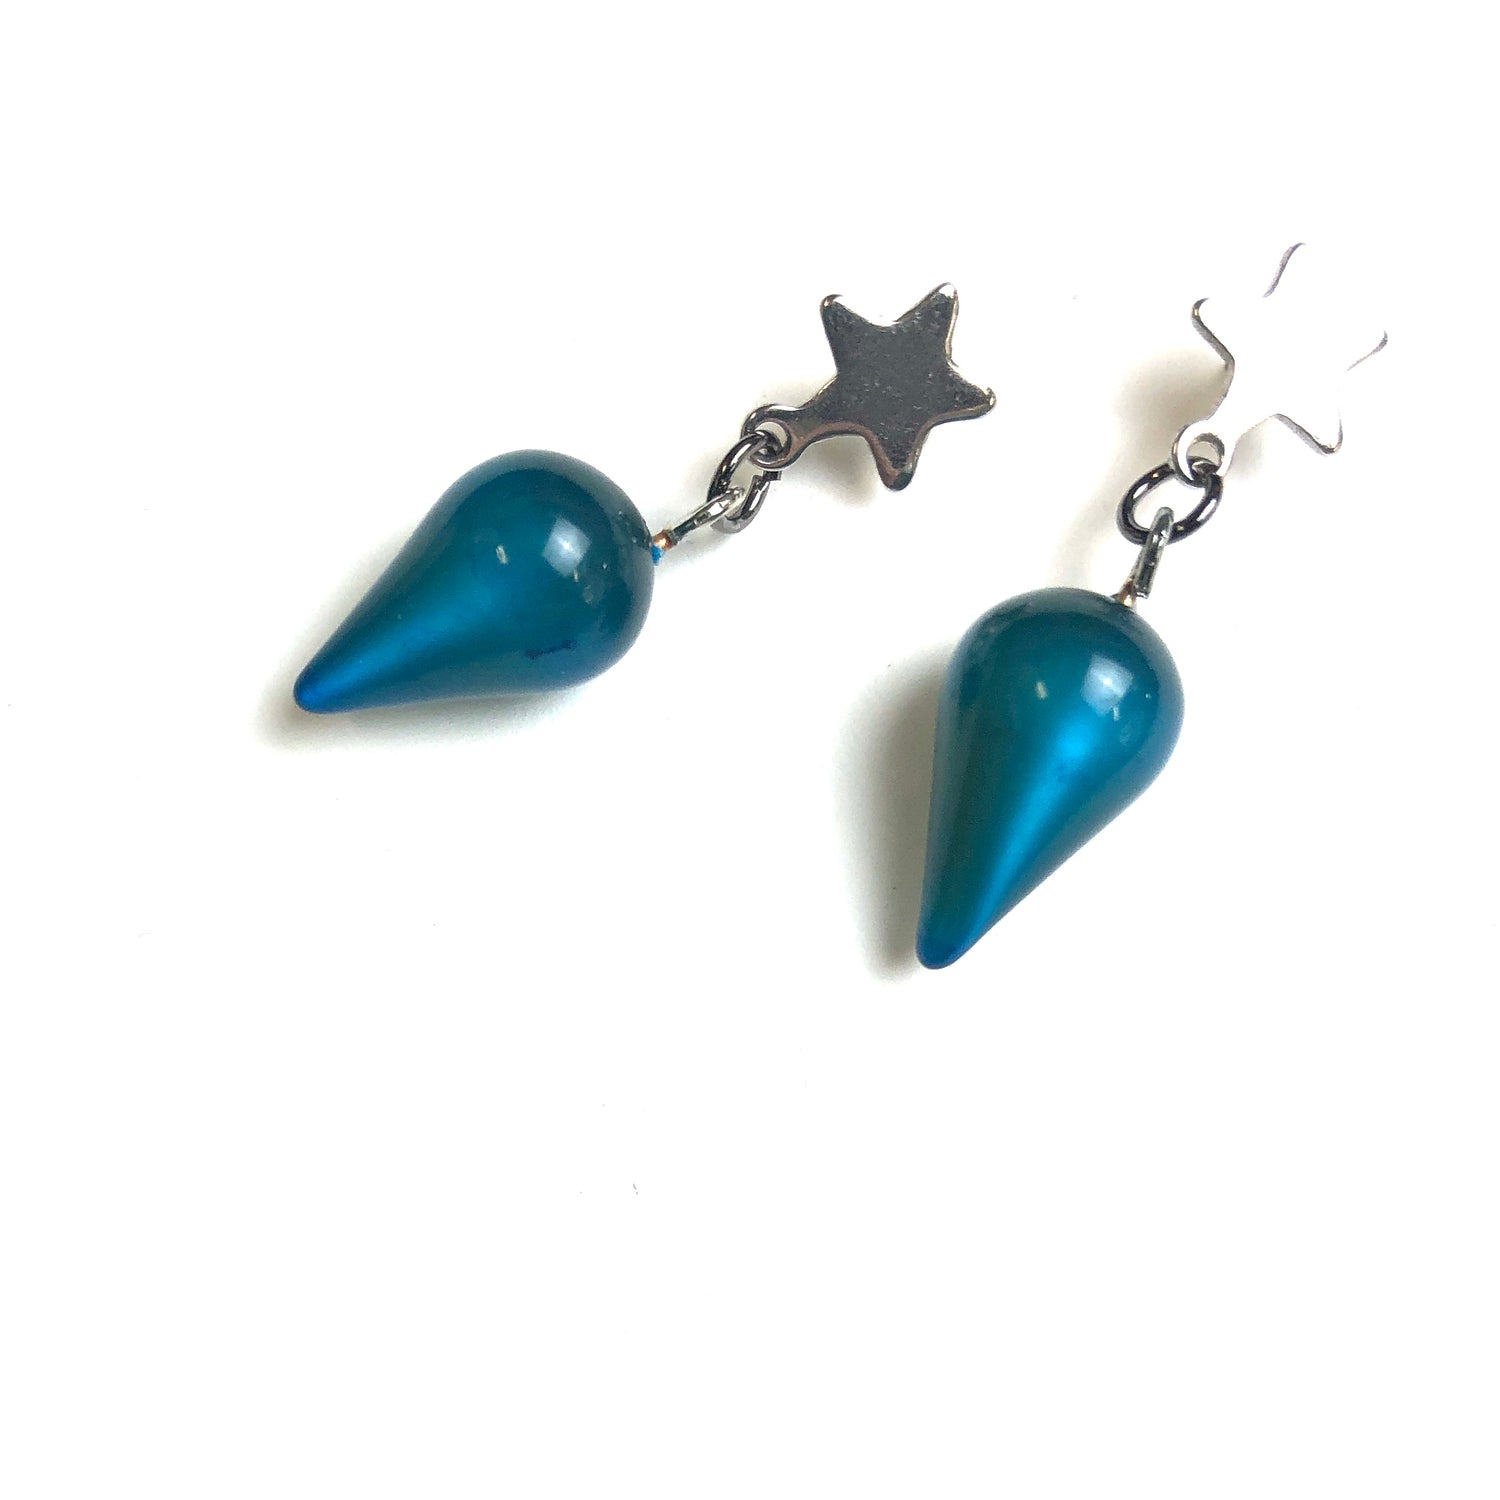 blue star earrings